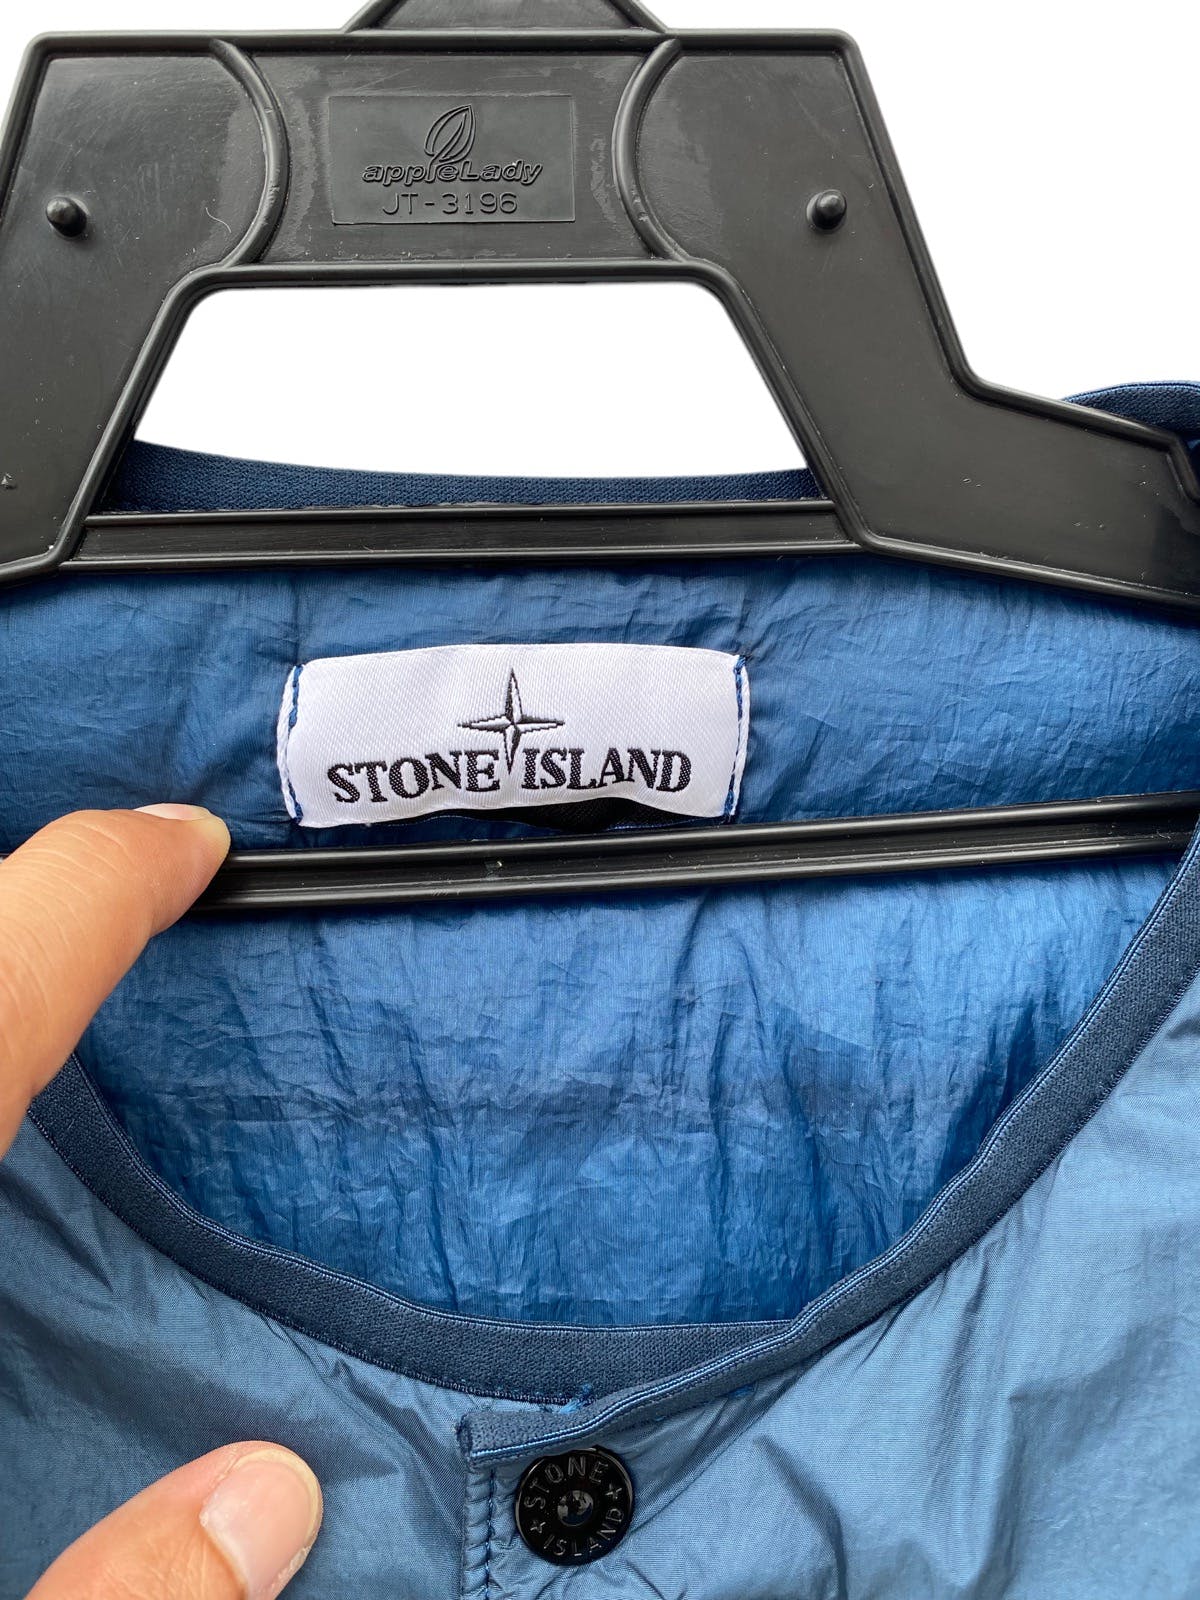 STONE ISLAND garment dyed crinkle reps ny blouson jacket - 10